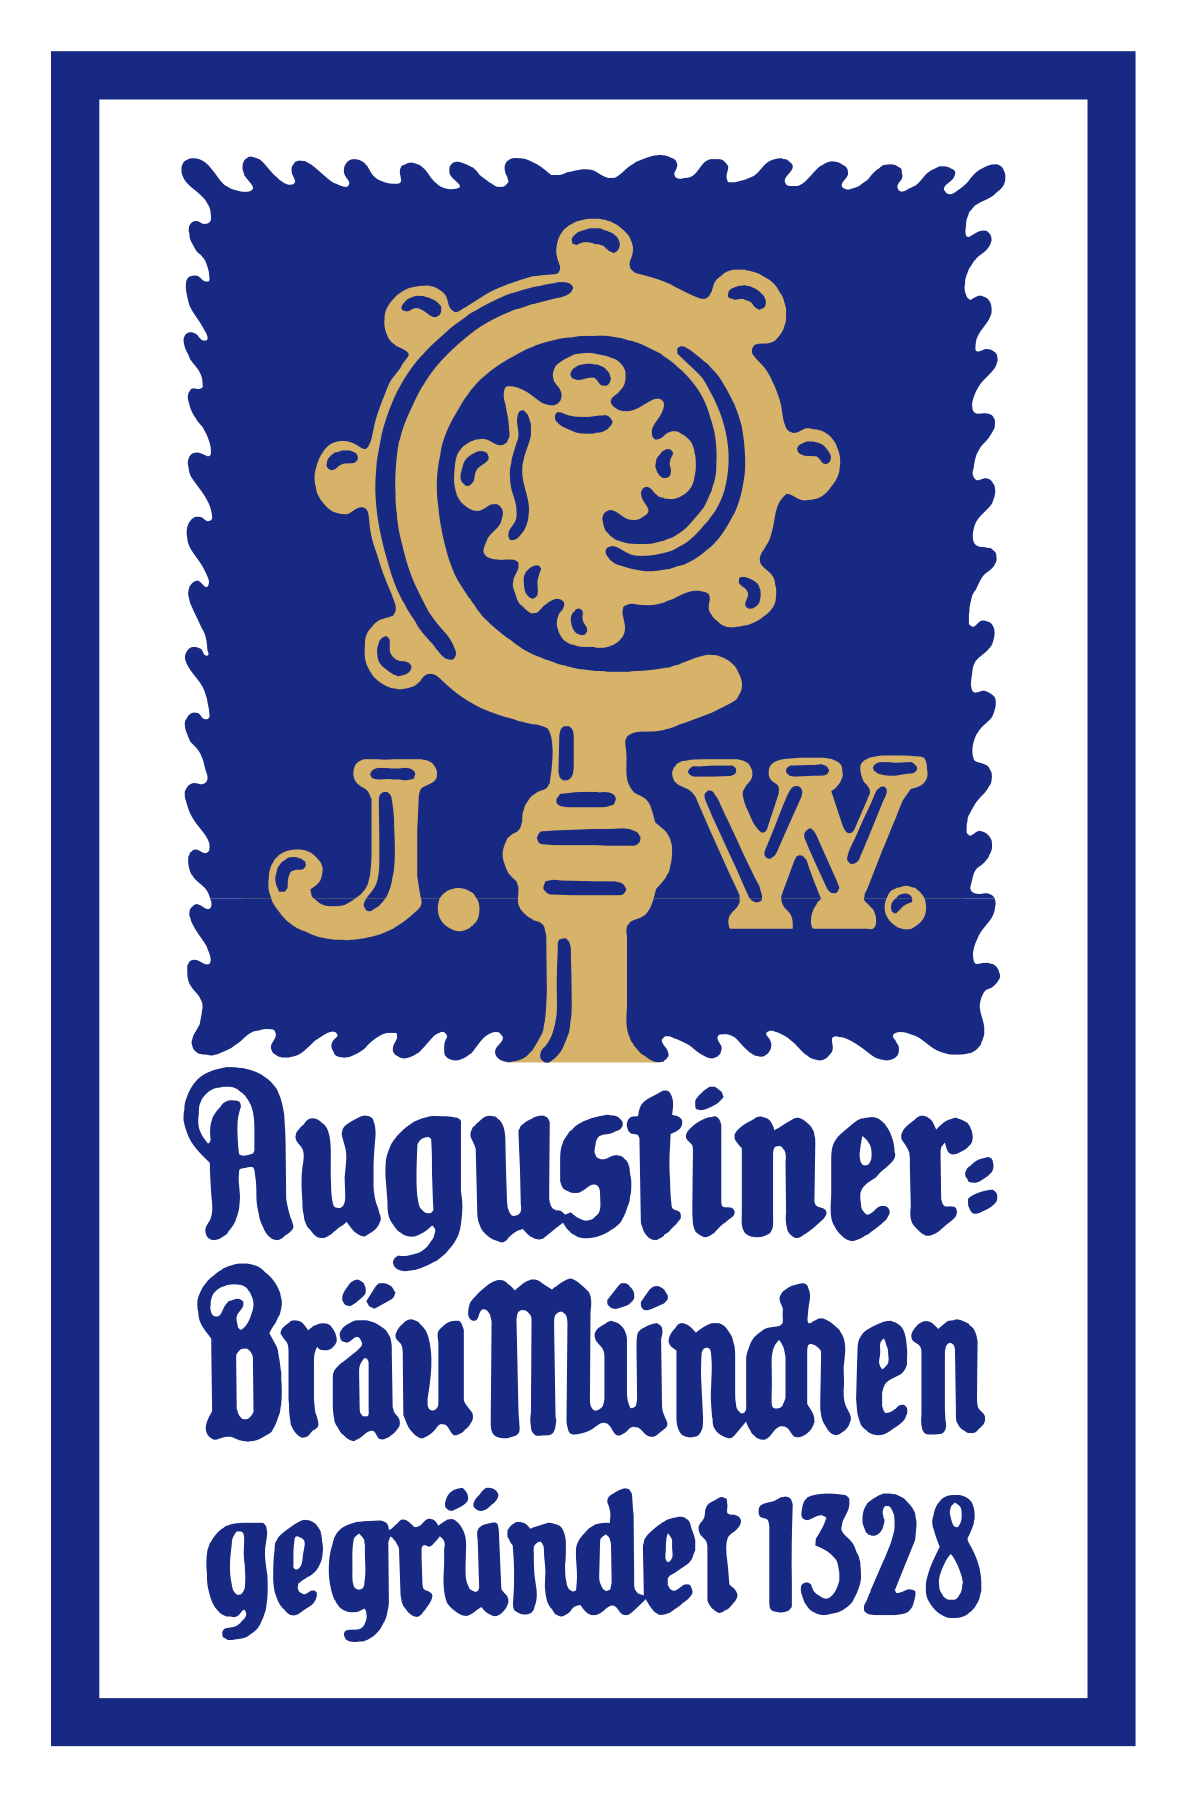 Logo de la cervecería Augustiner-Bräu